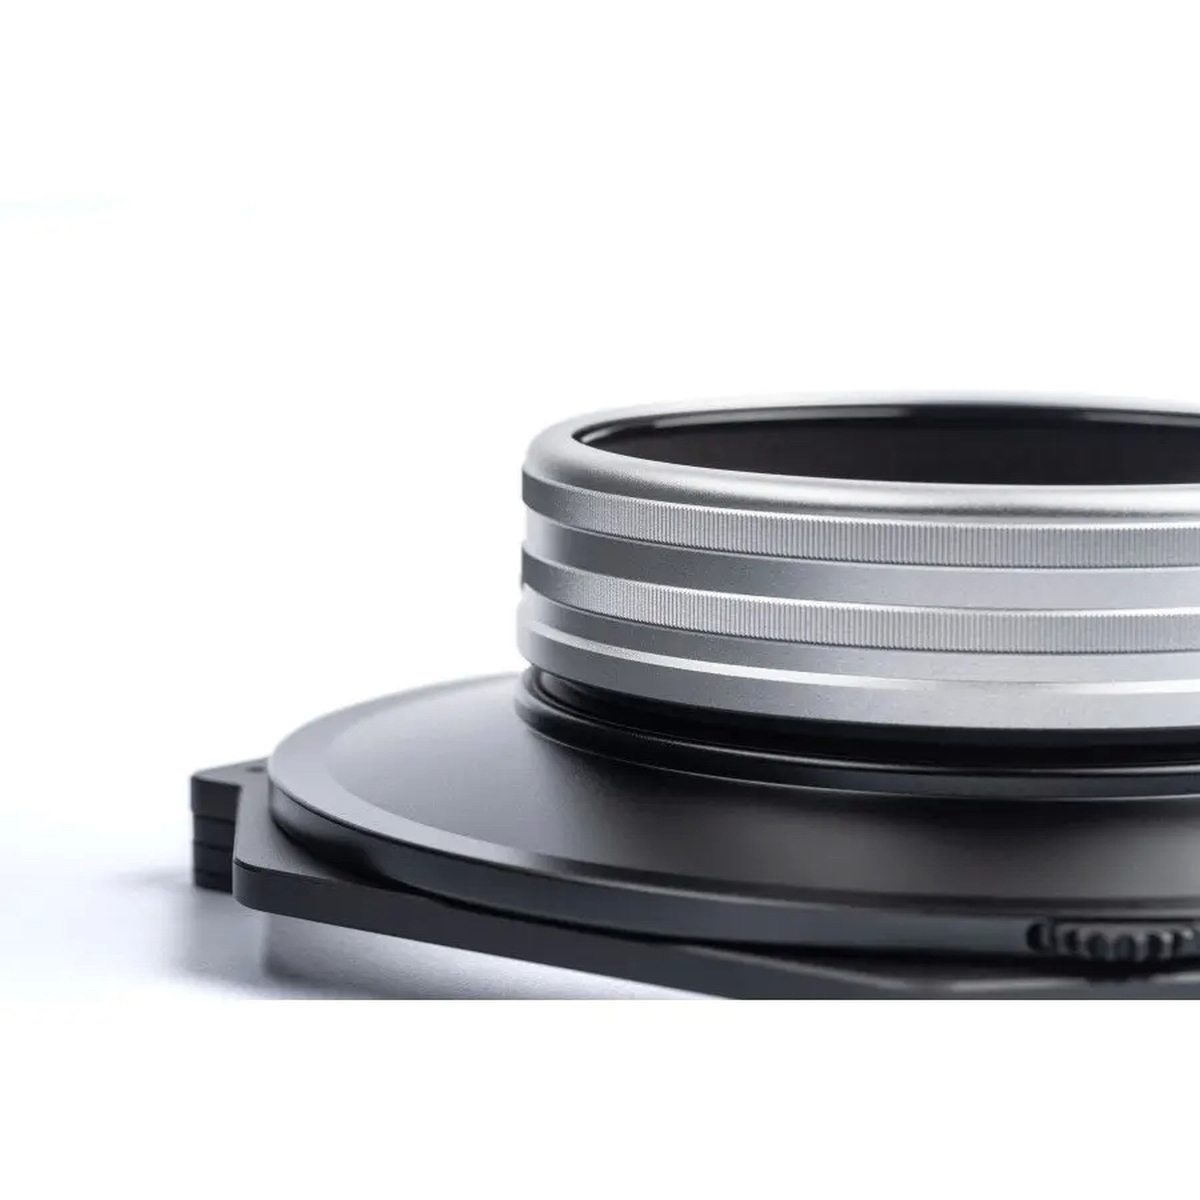 Nisi S6 Filterhalter Kit für Sony 12-24 mm 1:2,8